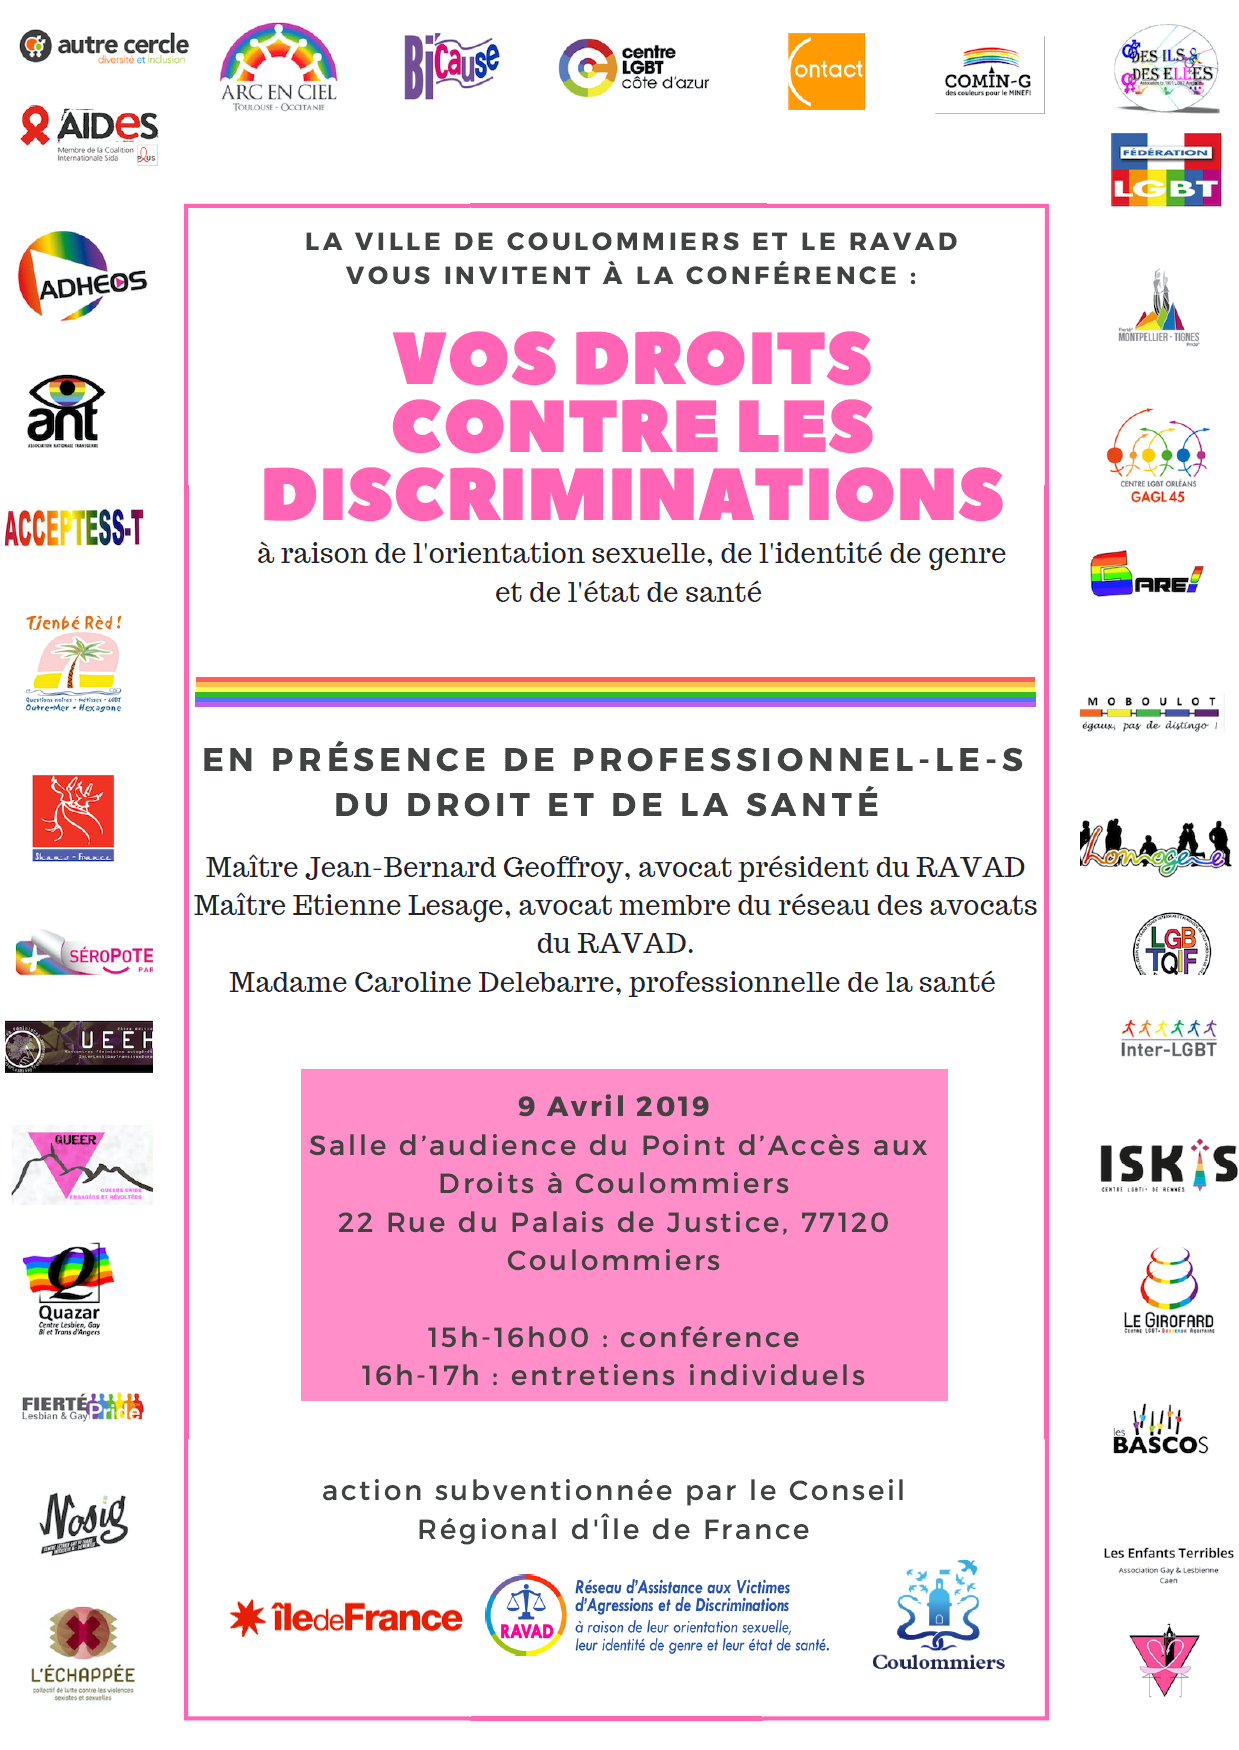 Conférence Vos droits contre les discriminations